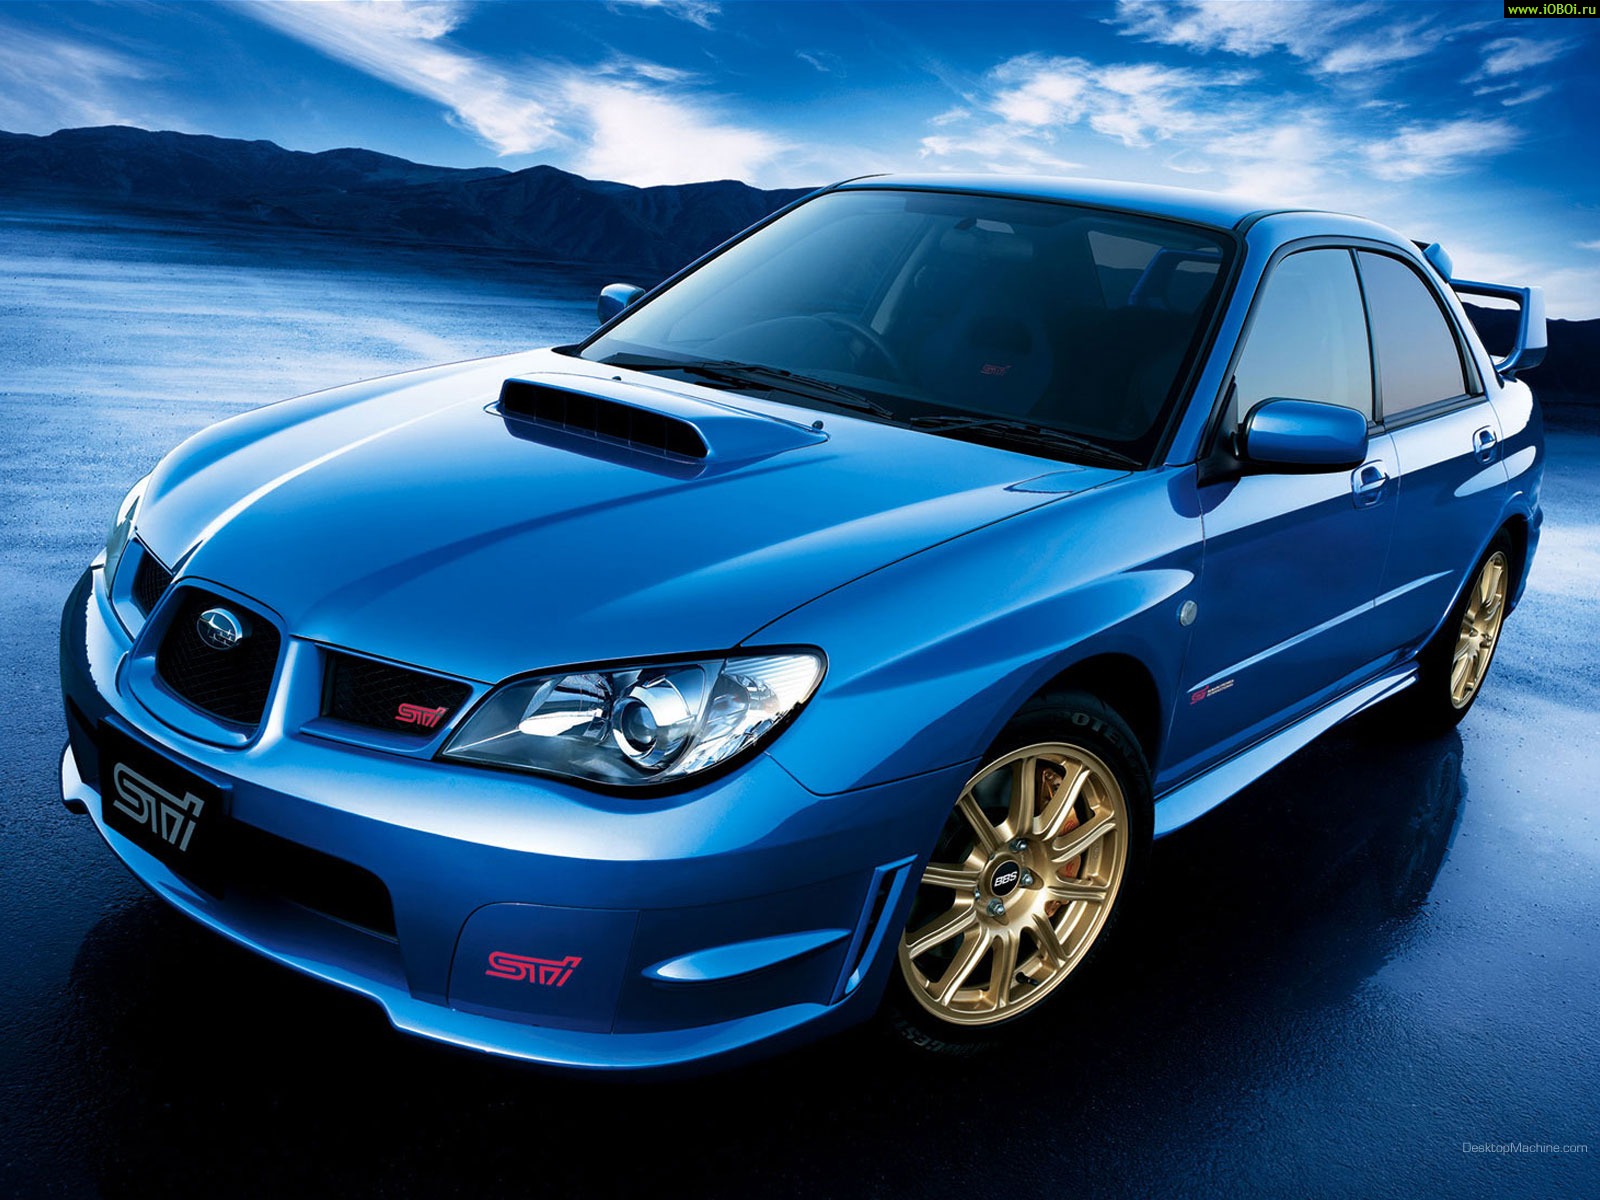 Subaru, Субару, синий авто, тюнинг, Subaru, blue cars, tuning